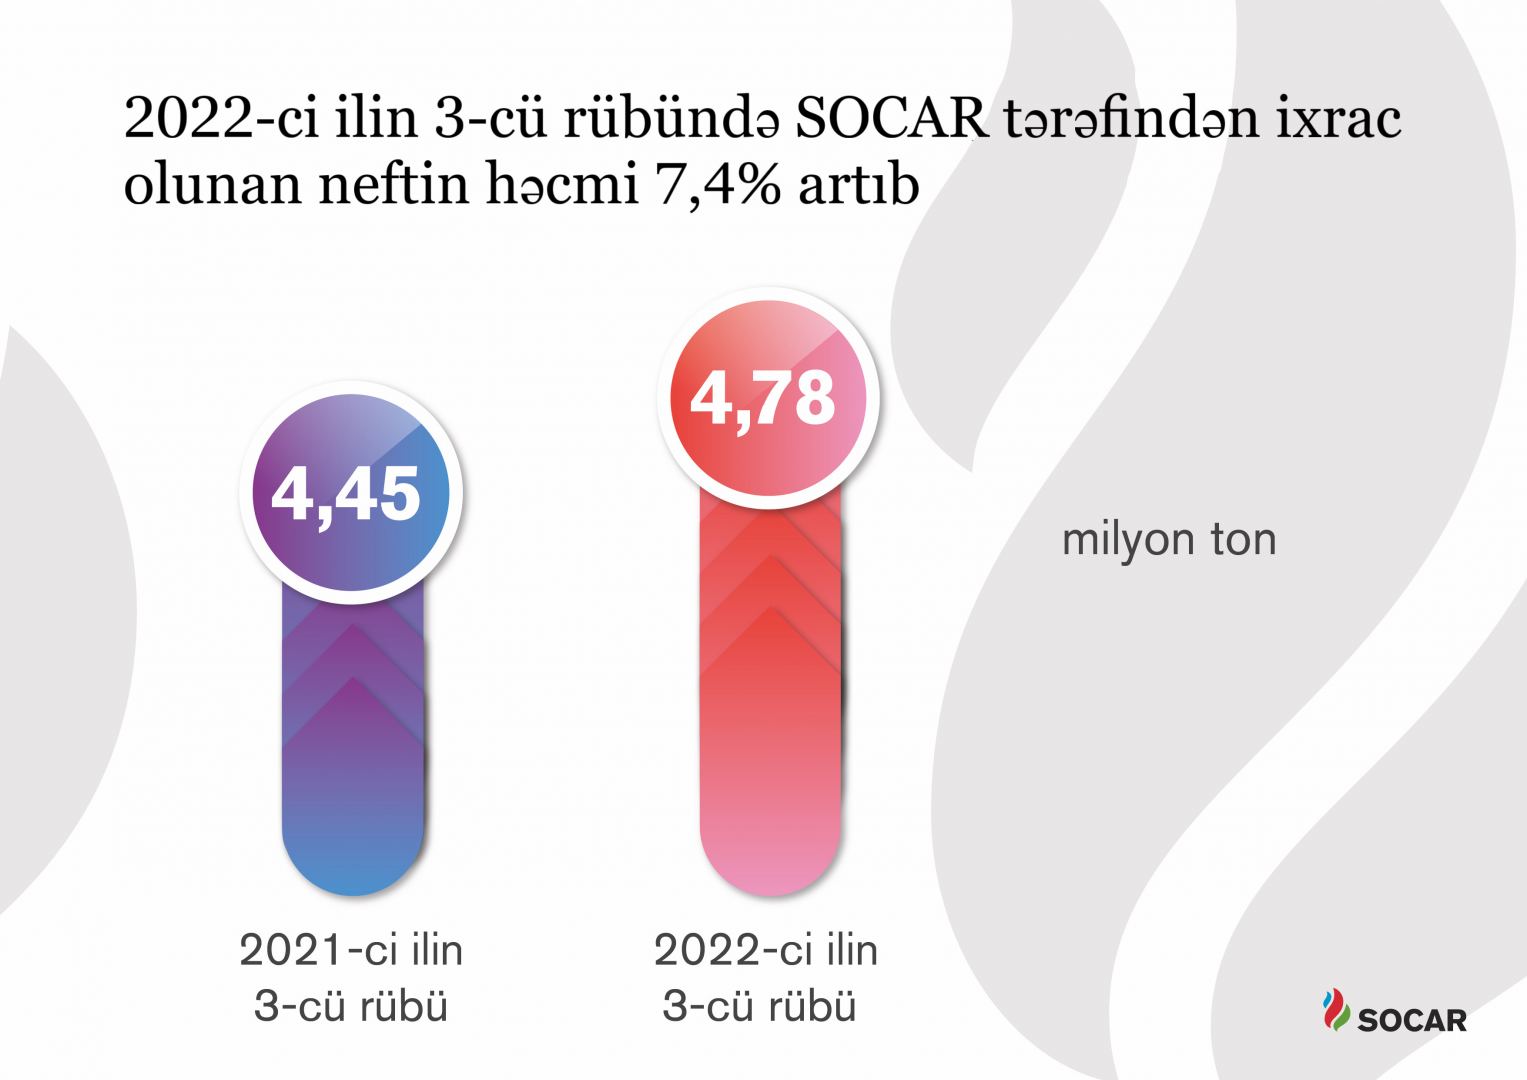 Названы показатели добычи нефтепродуктов госкомпанией SOCAR за III кв 2022 г.